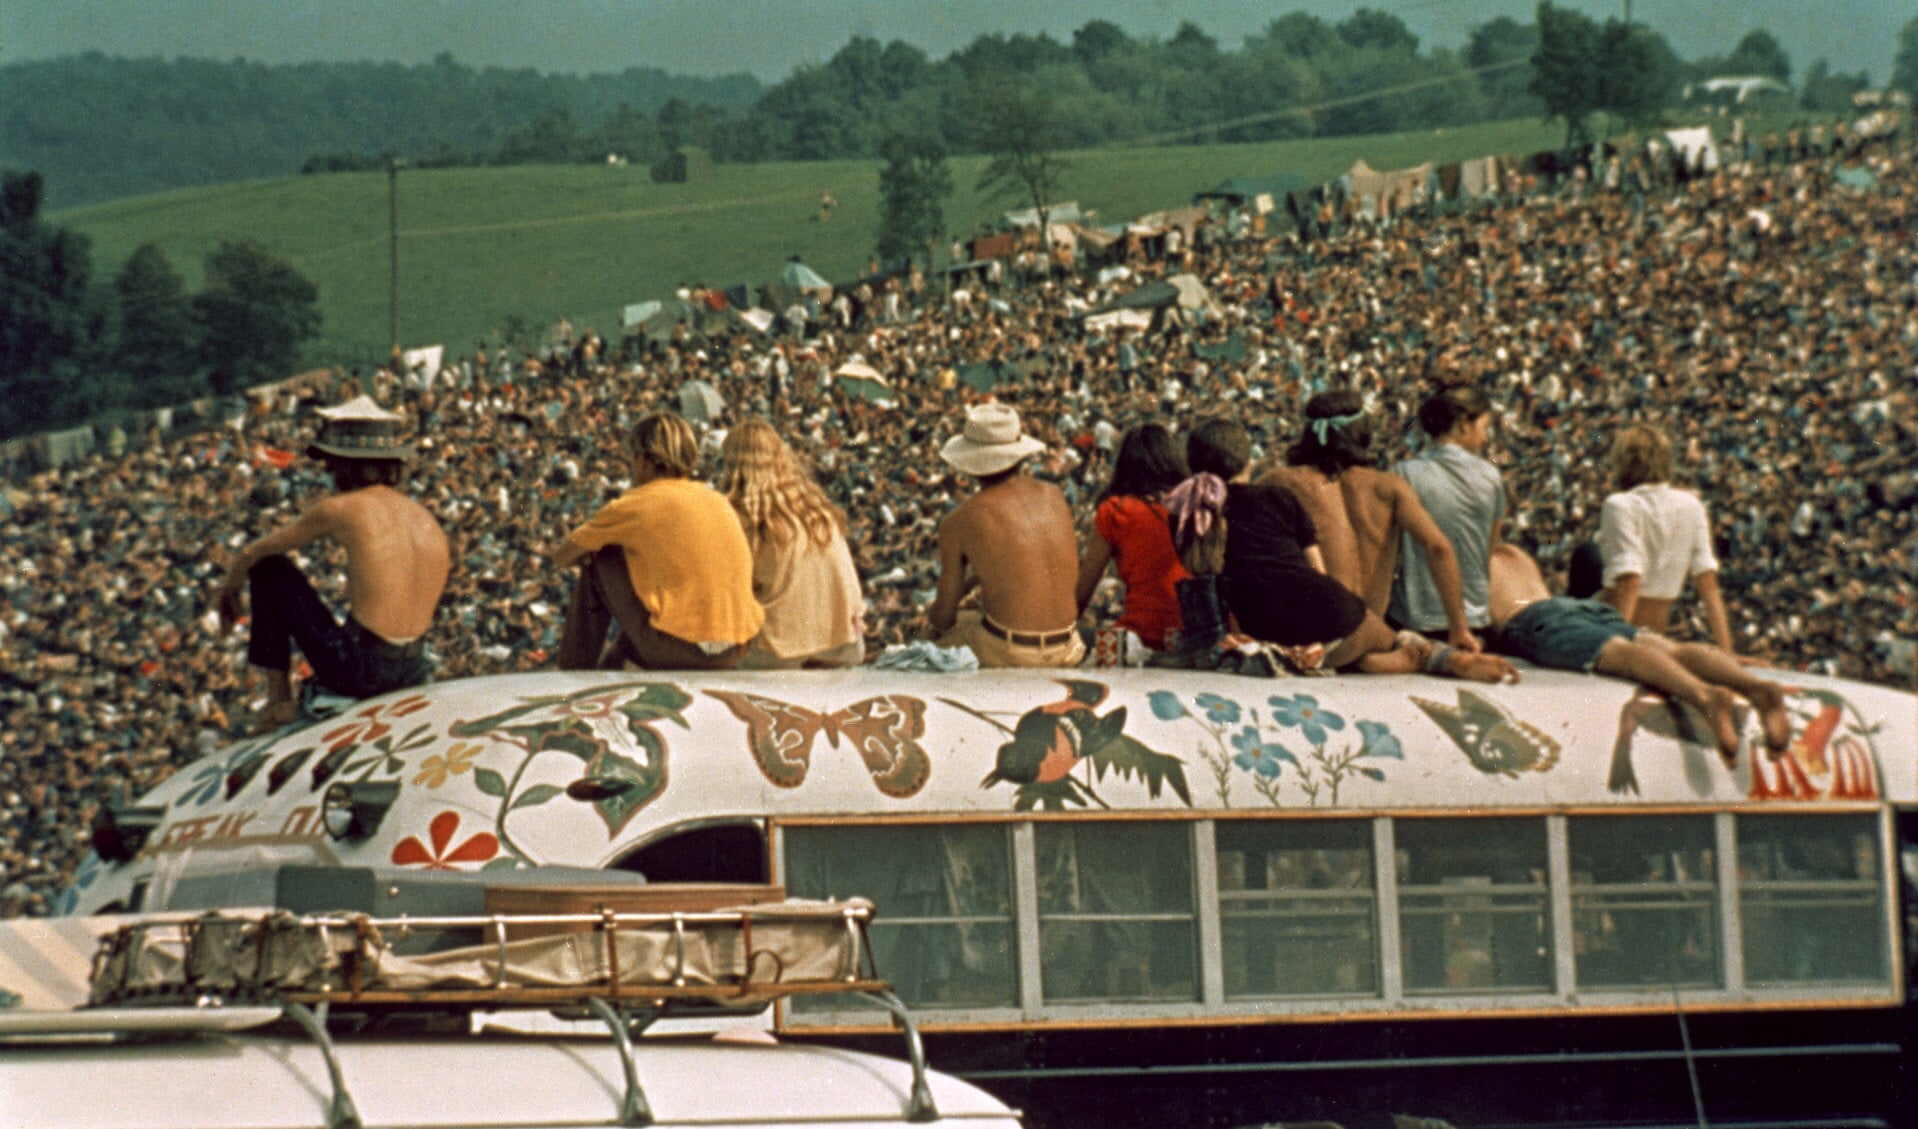 Zondag 18 augustus is het precies 50 jaar geleden dat het legendarische muziekfestival Woodstock plaatsvond. 